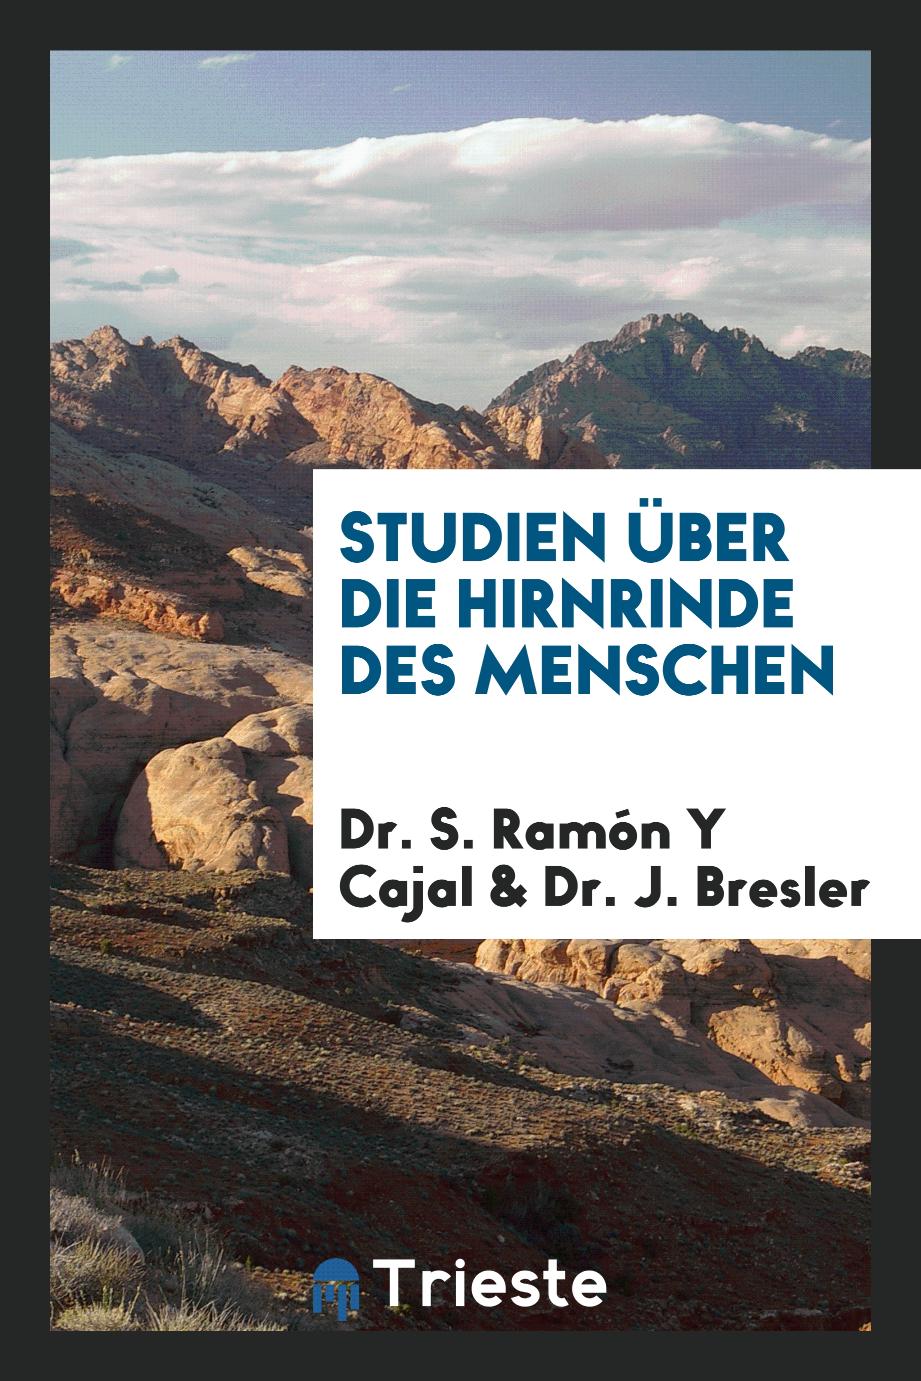 Dr. S. Ramón Y Cajal, Dr. J. Bresler - Studien über die Hirnrinde des Menschen